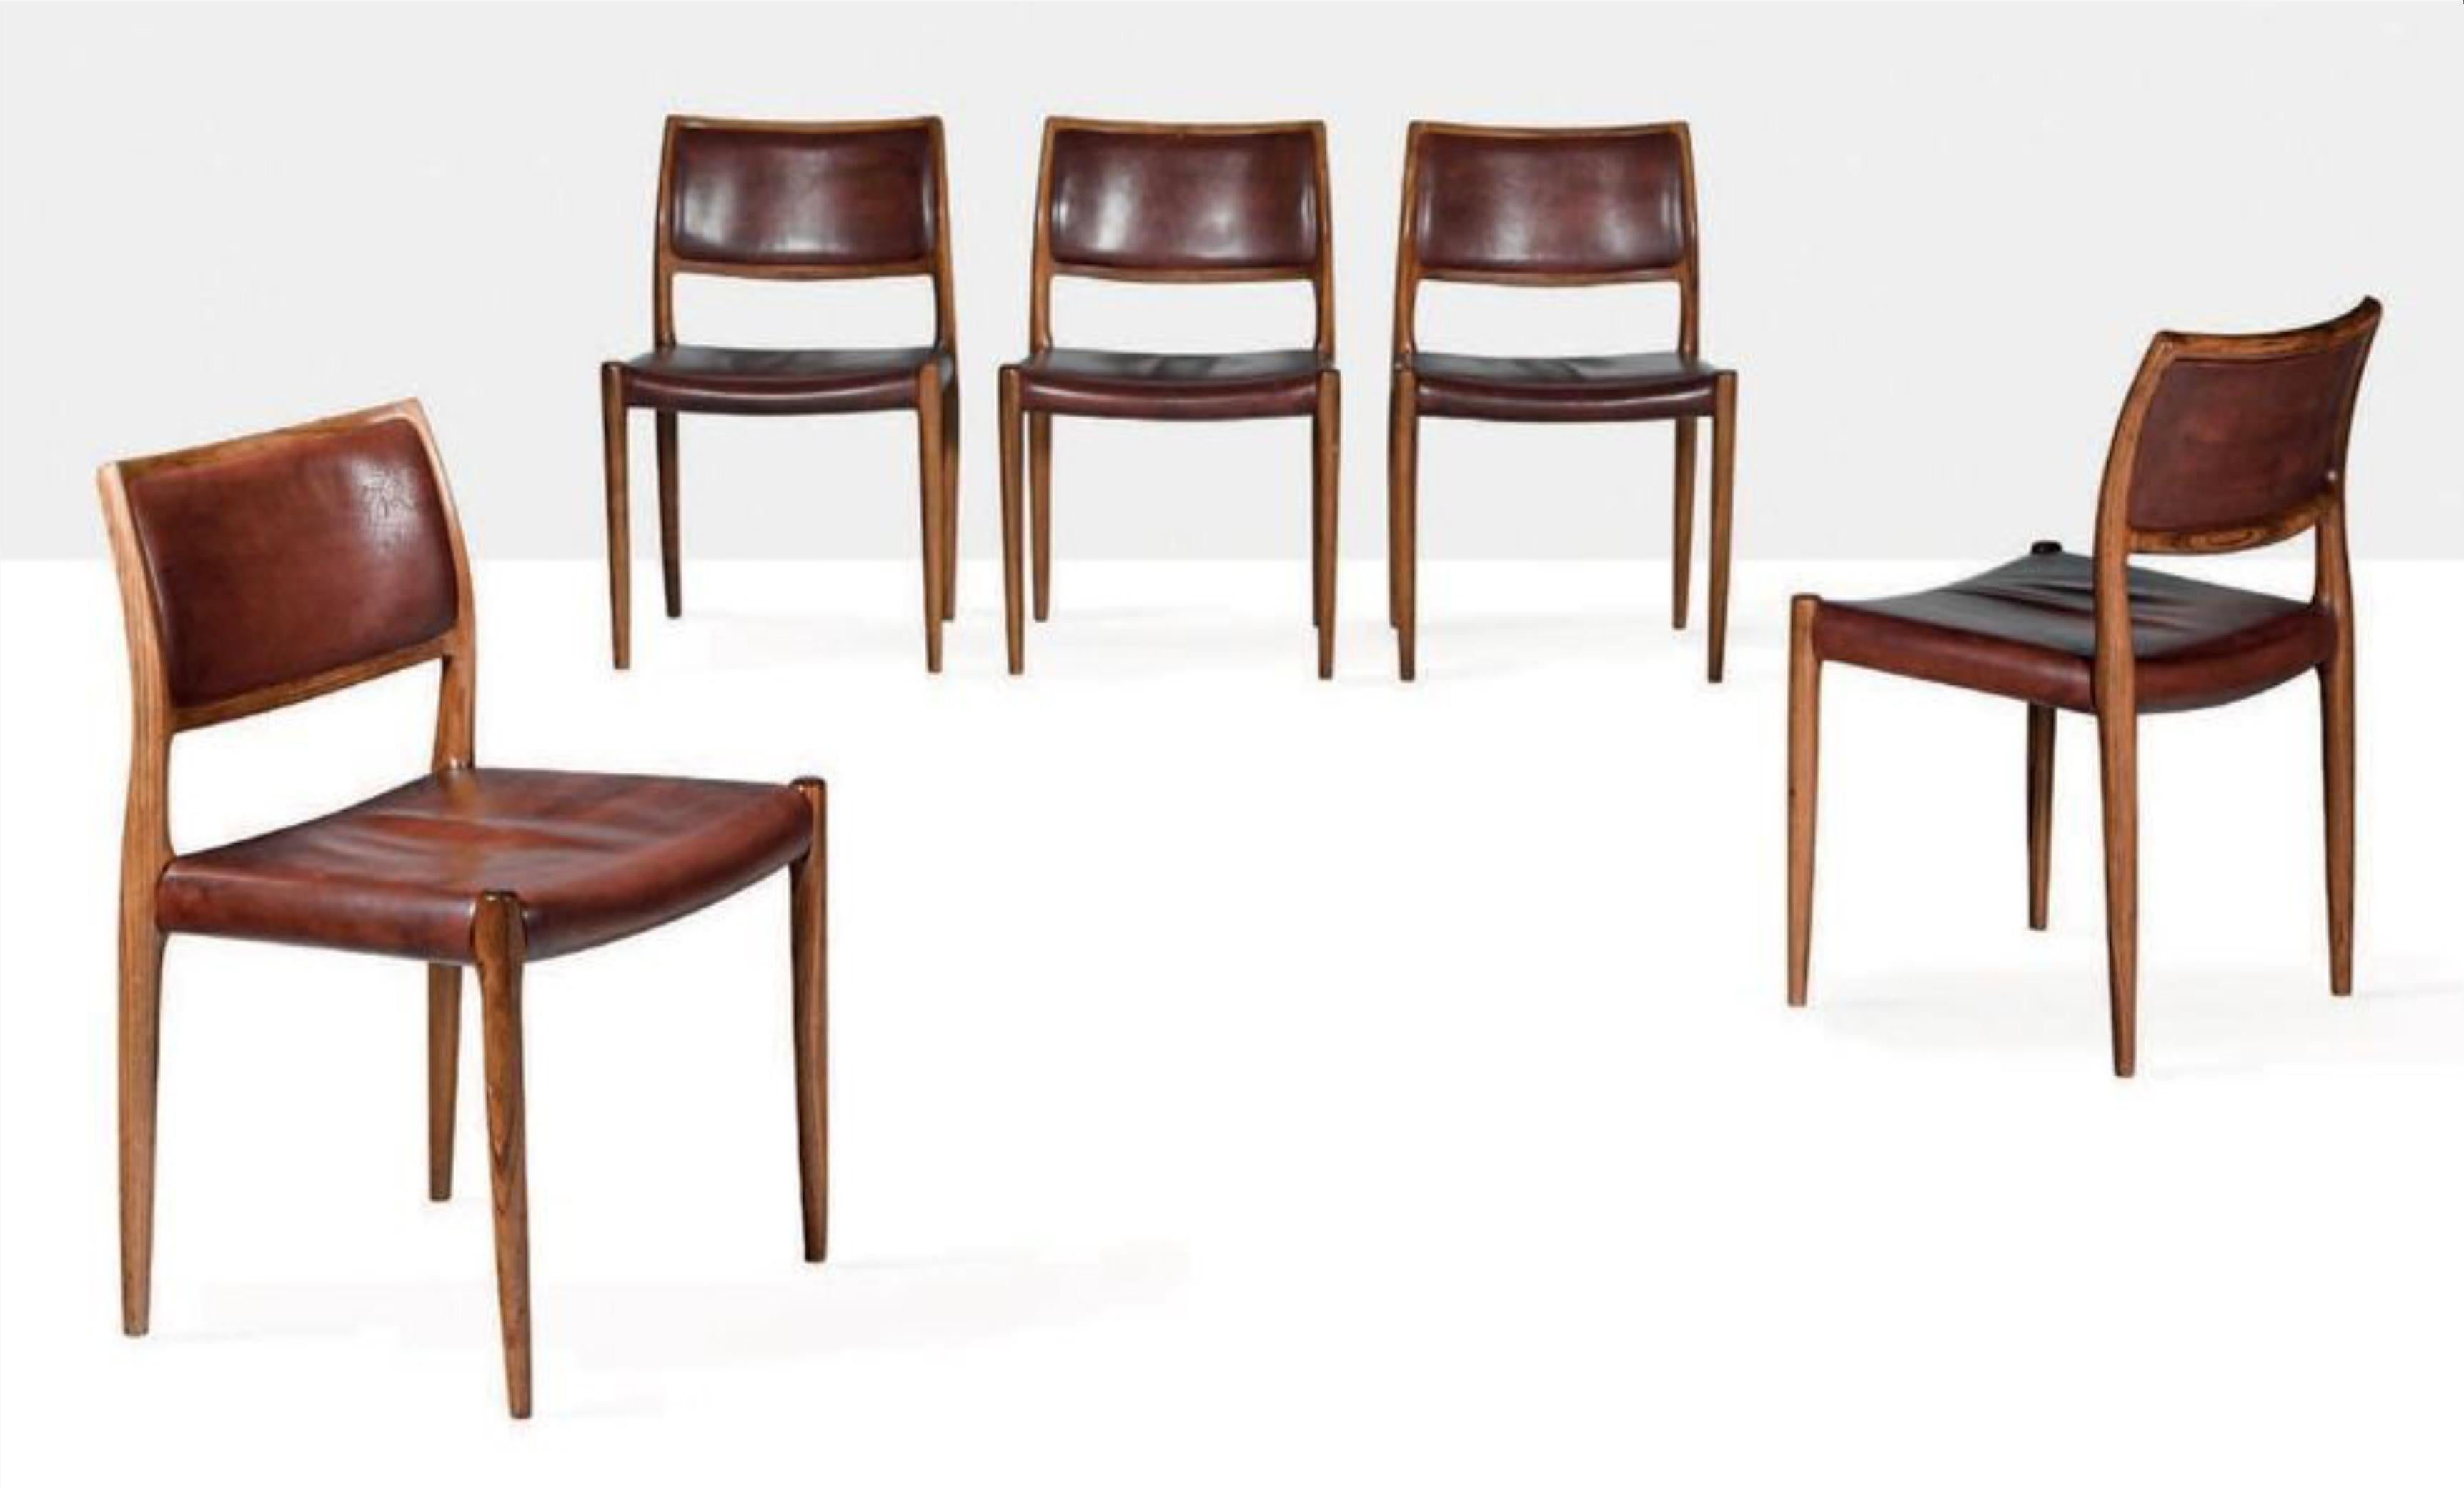 5 Esstischstühle Modell 80 von Niels Otto Møller für J.L. Møller-Højbjerg, Dänemark. Rosenholzstühle mit Original Cognac-Lederbezug Modell 80, 1970er Jahre Markierung Moller unter dem Sitz.
5 Stühle verfügbar Preis für 1 Stuhl 
guter Zustand.